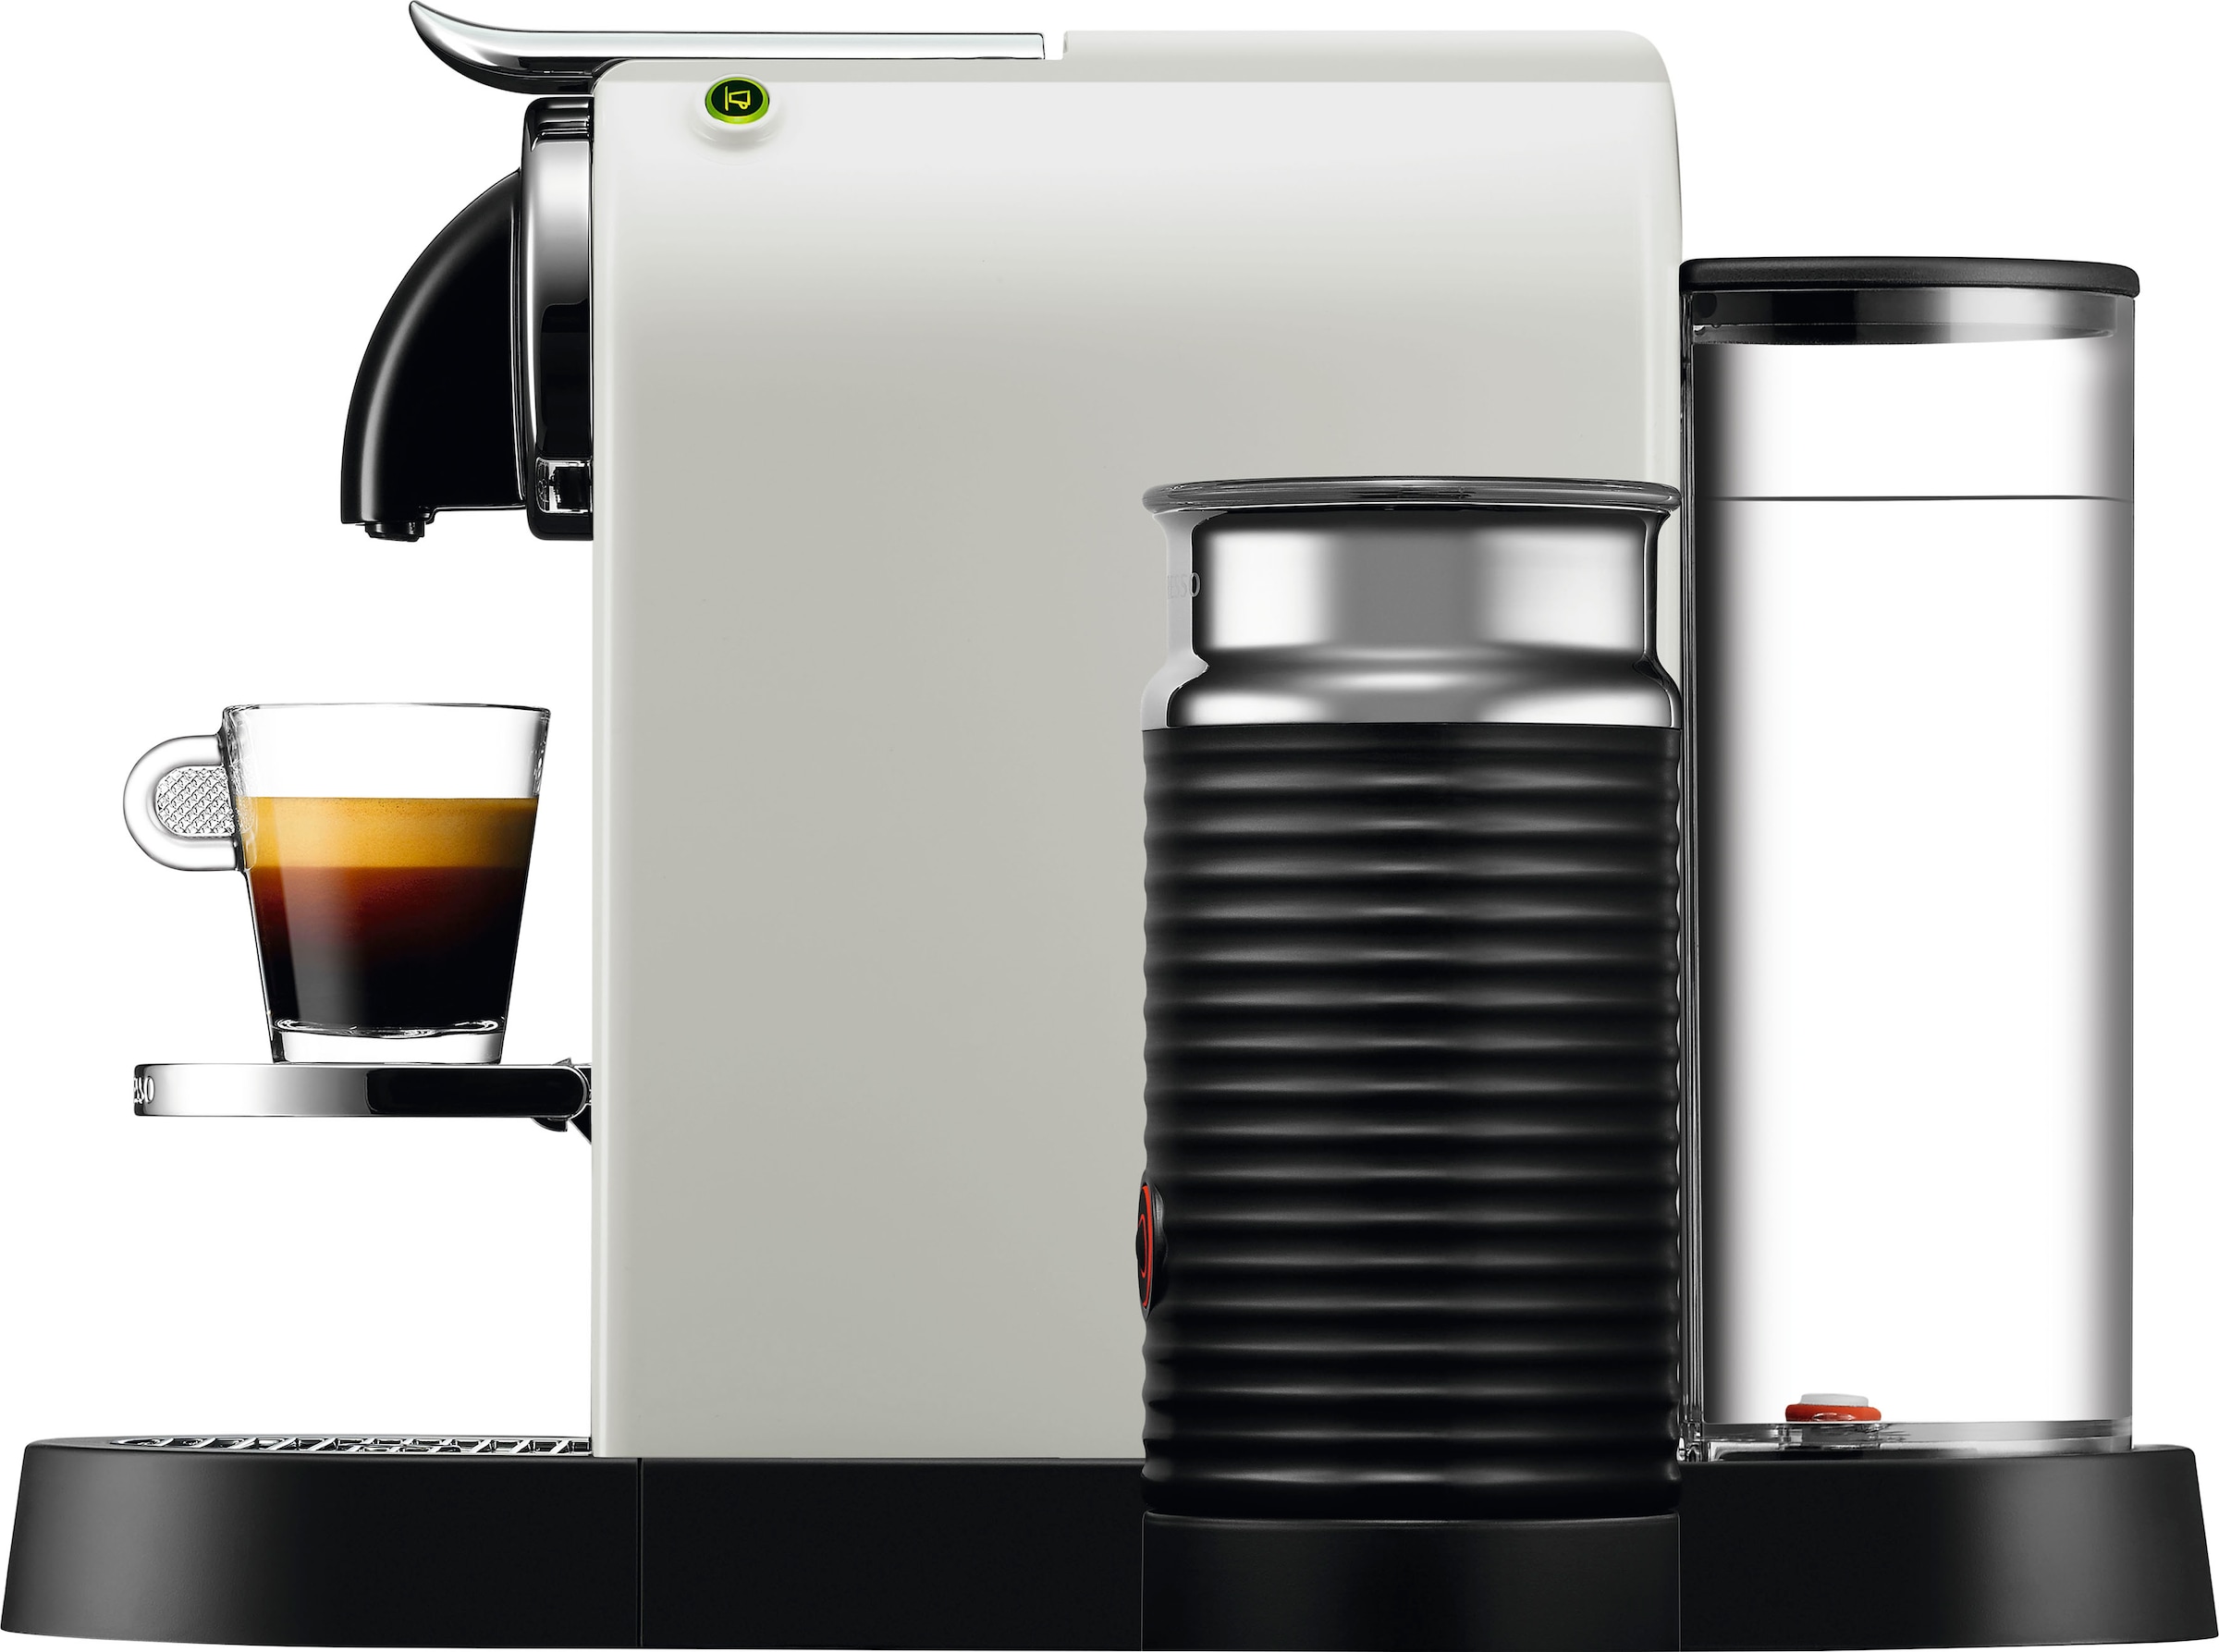 Nespresso Kapselmaschine »CITIZ EN 267.WAE von DeLonghi, White«, inkl. Aeroccino Milchaufschäumer, Willkommenspaket mit 7 Kapseln